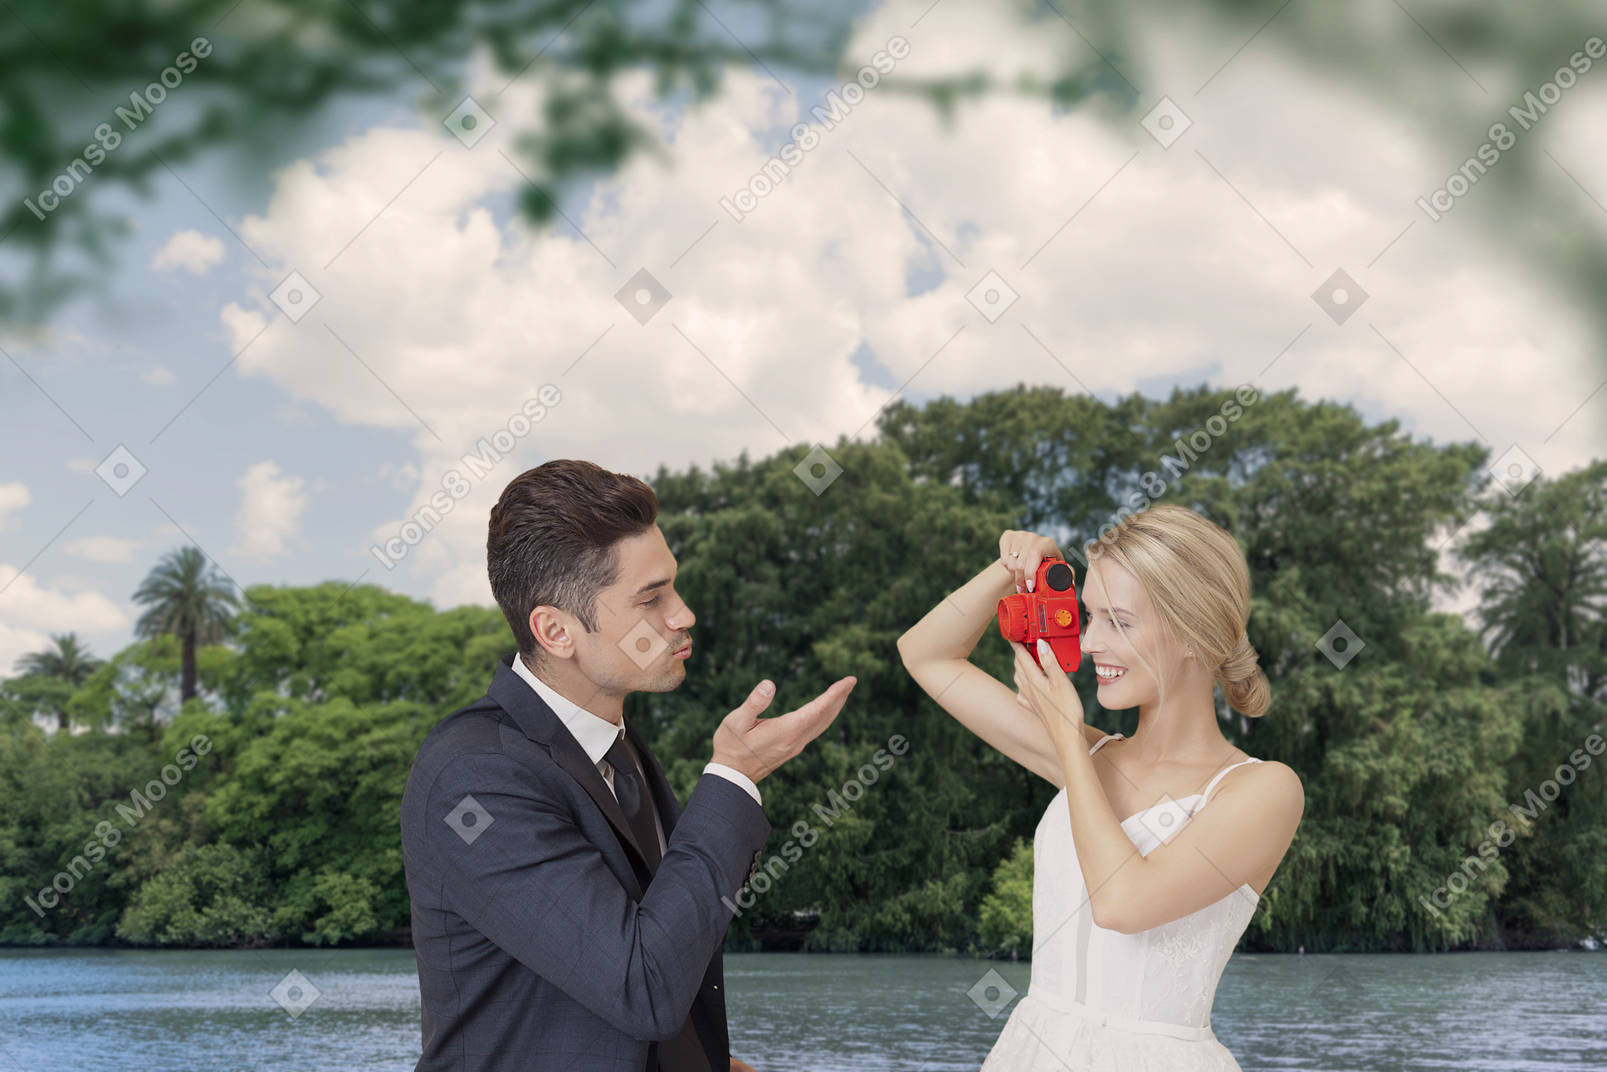 一位幸福的新娘在河边的绿树下给新郎送吻的照片